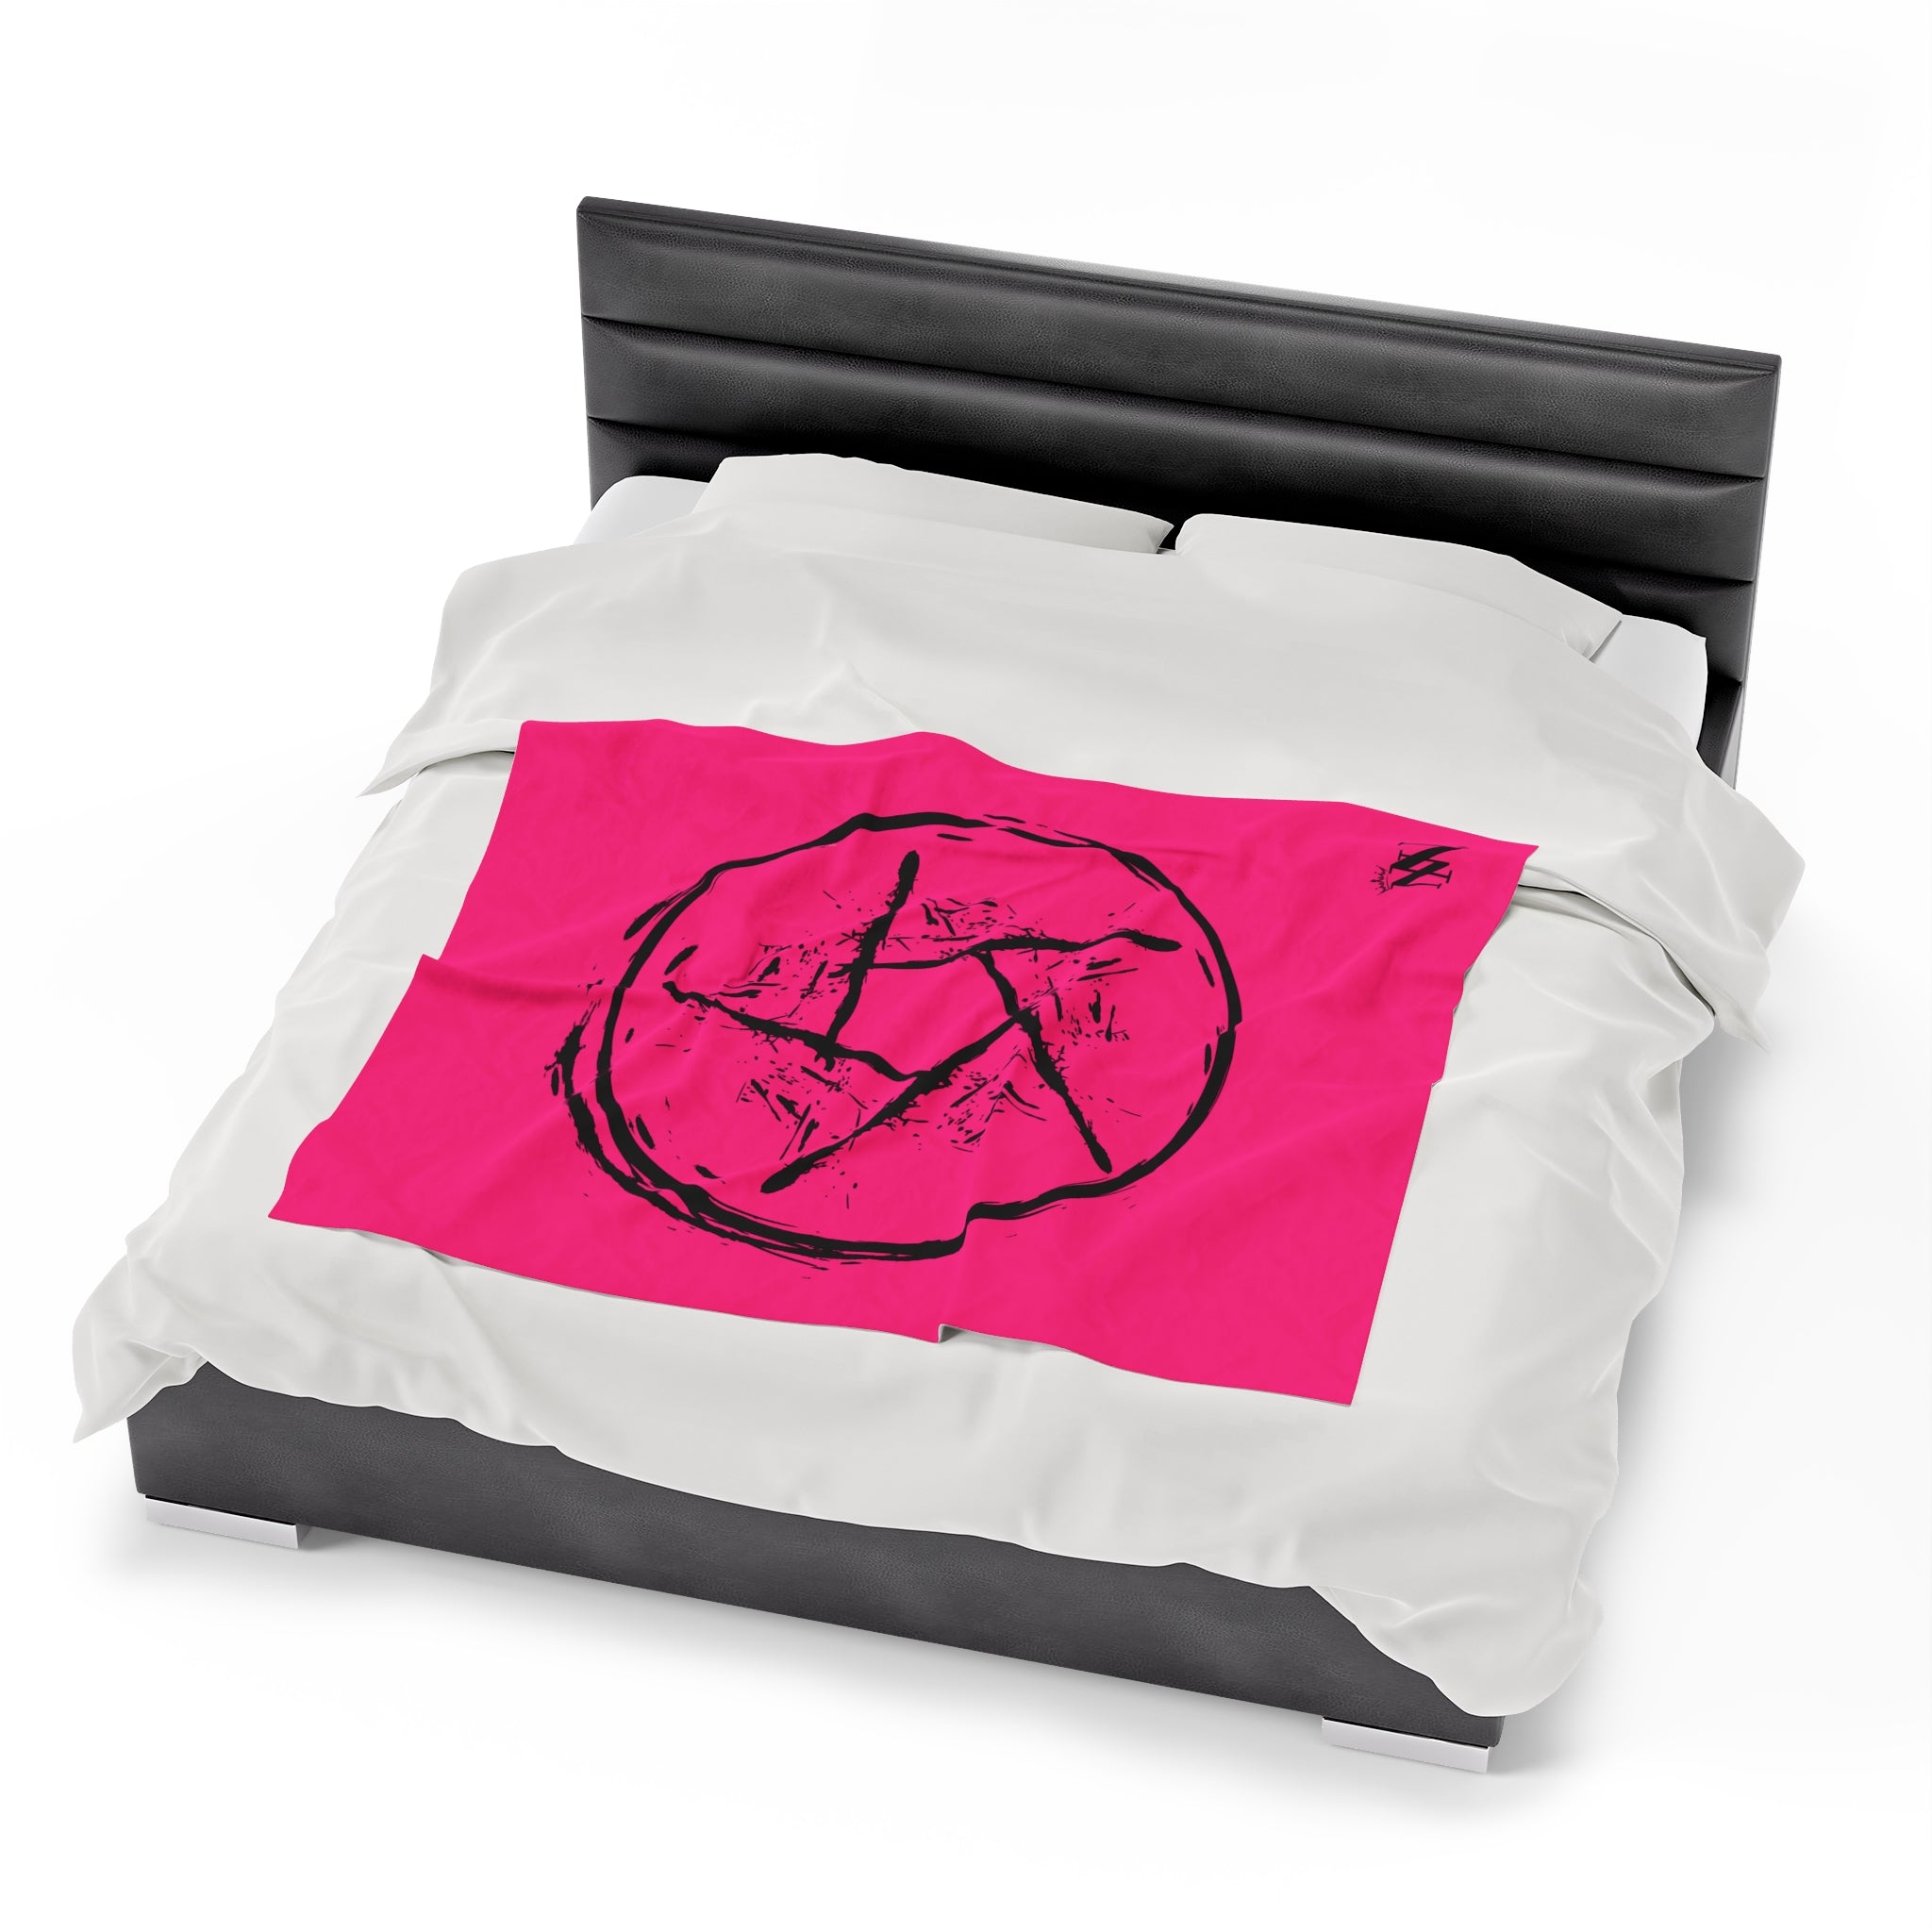 My pentagram sexual wellness blanket